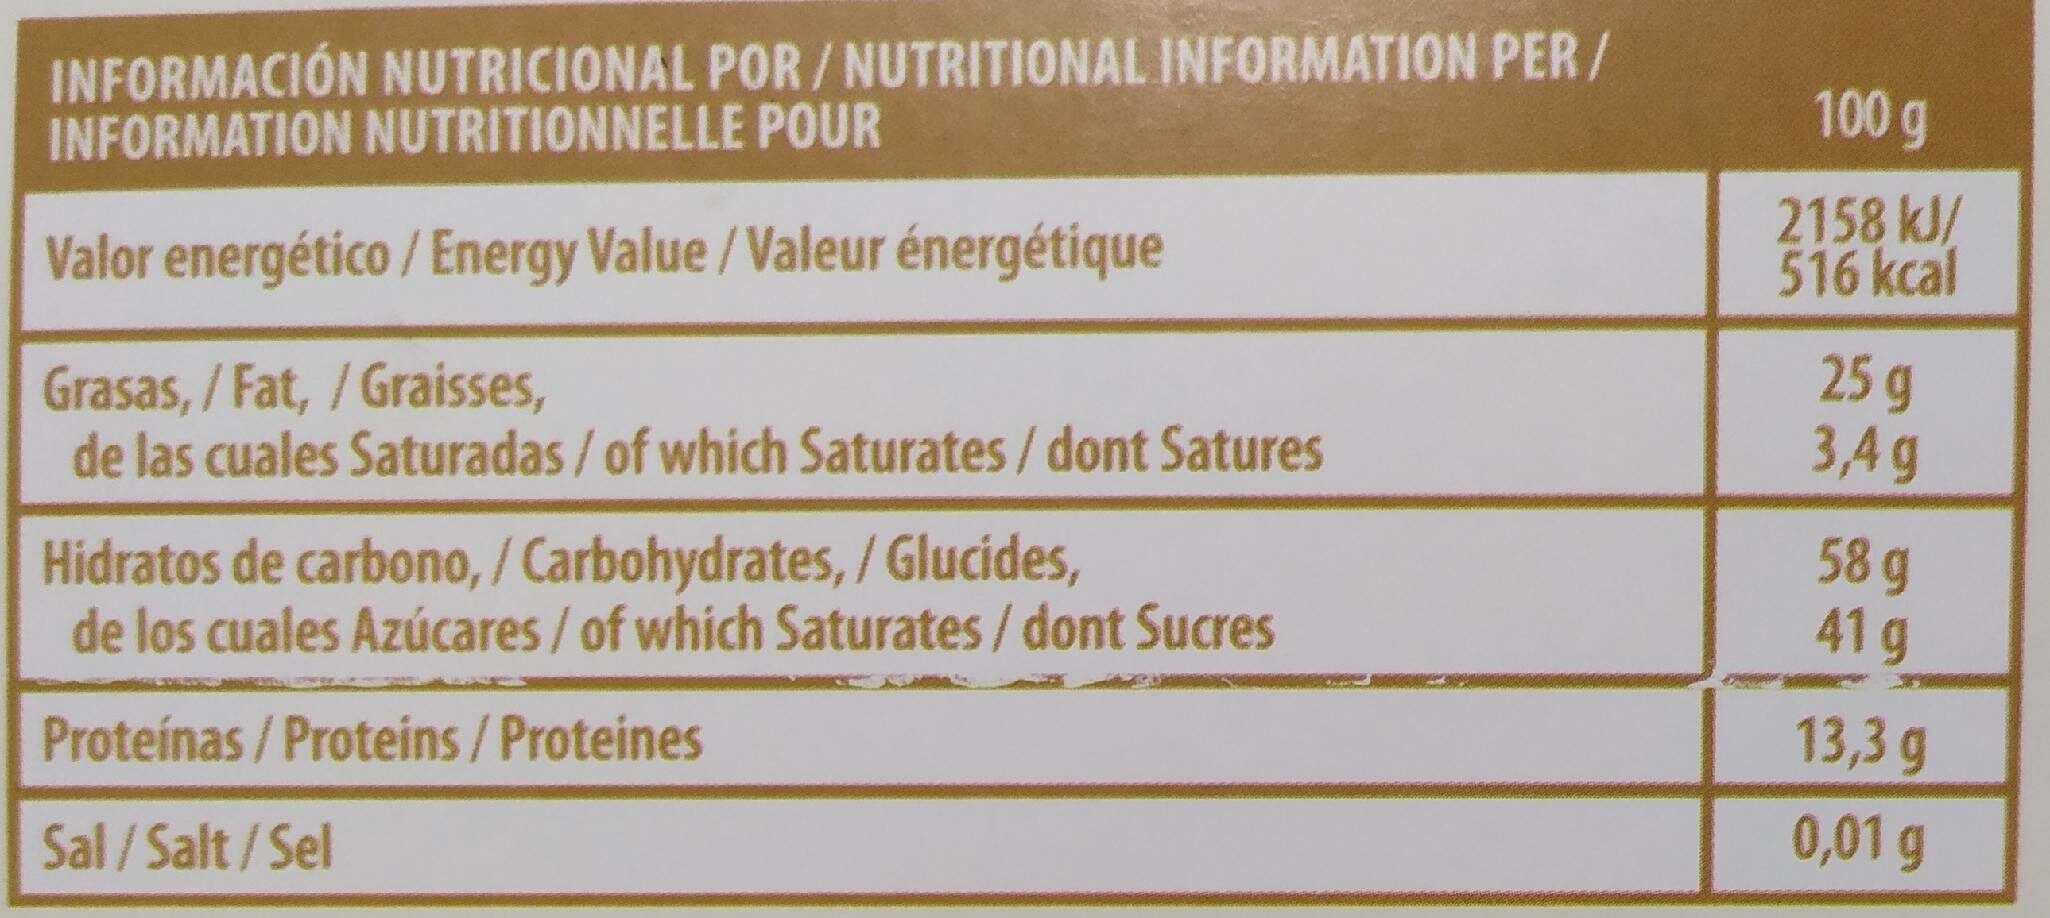 Turron Duro de Cacahuete - Tableau nutritionnel - es